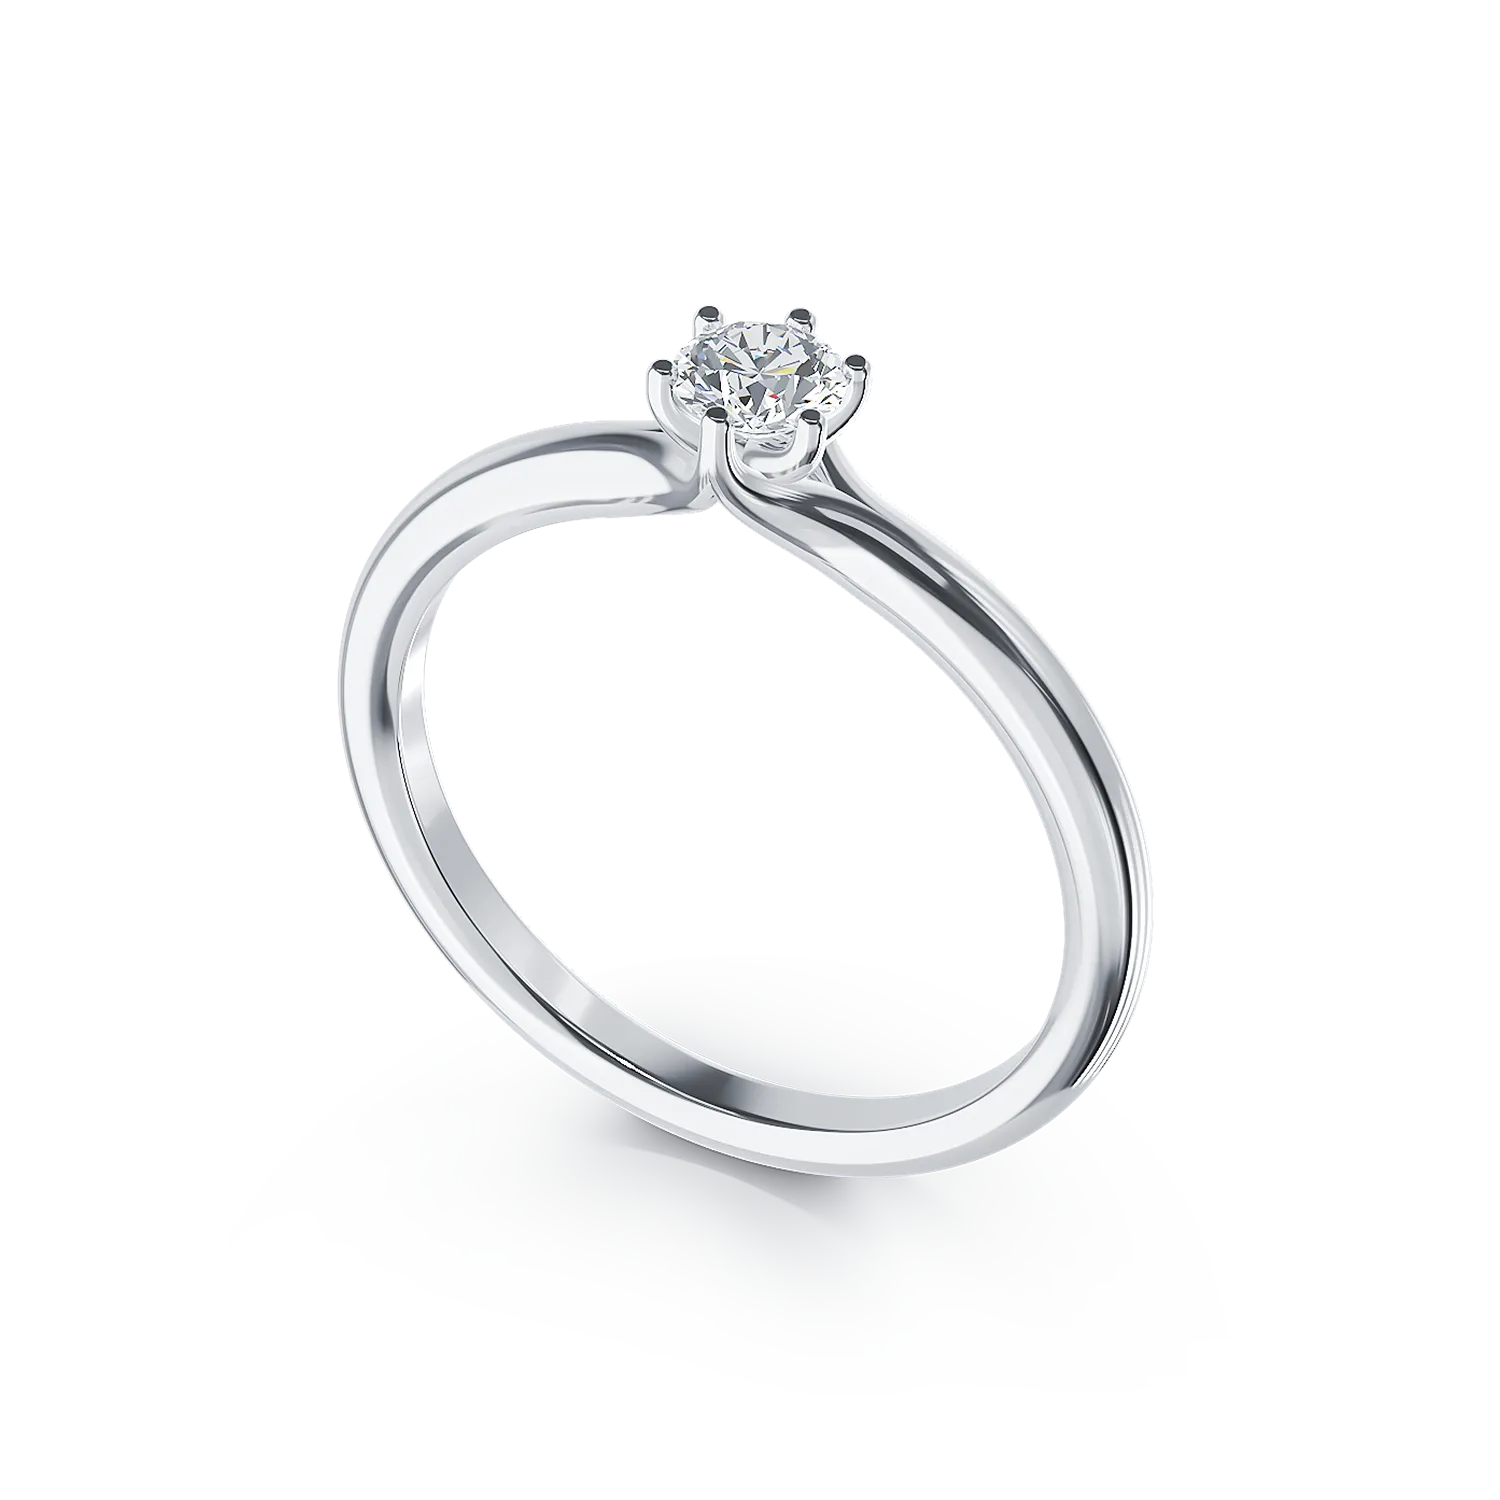 Inel de logodna din platina cu un diamant solitaire de 0.193ct